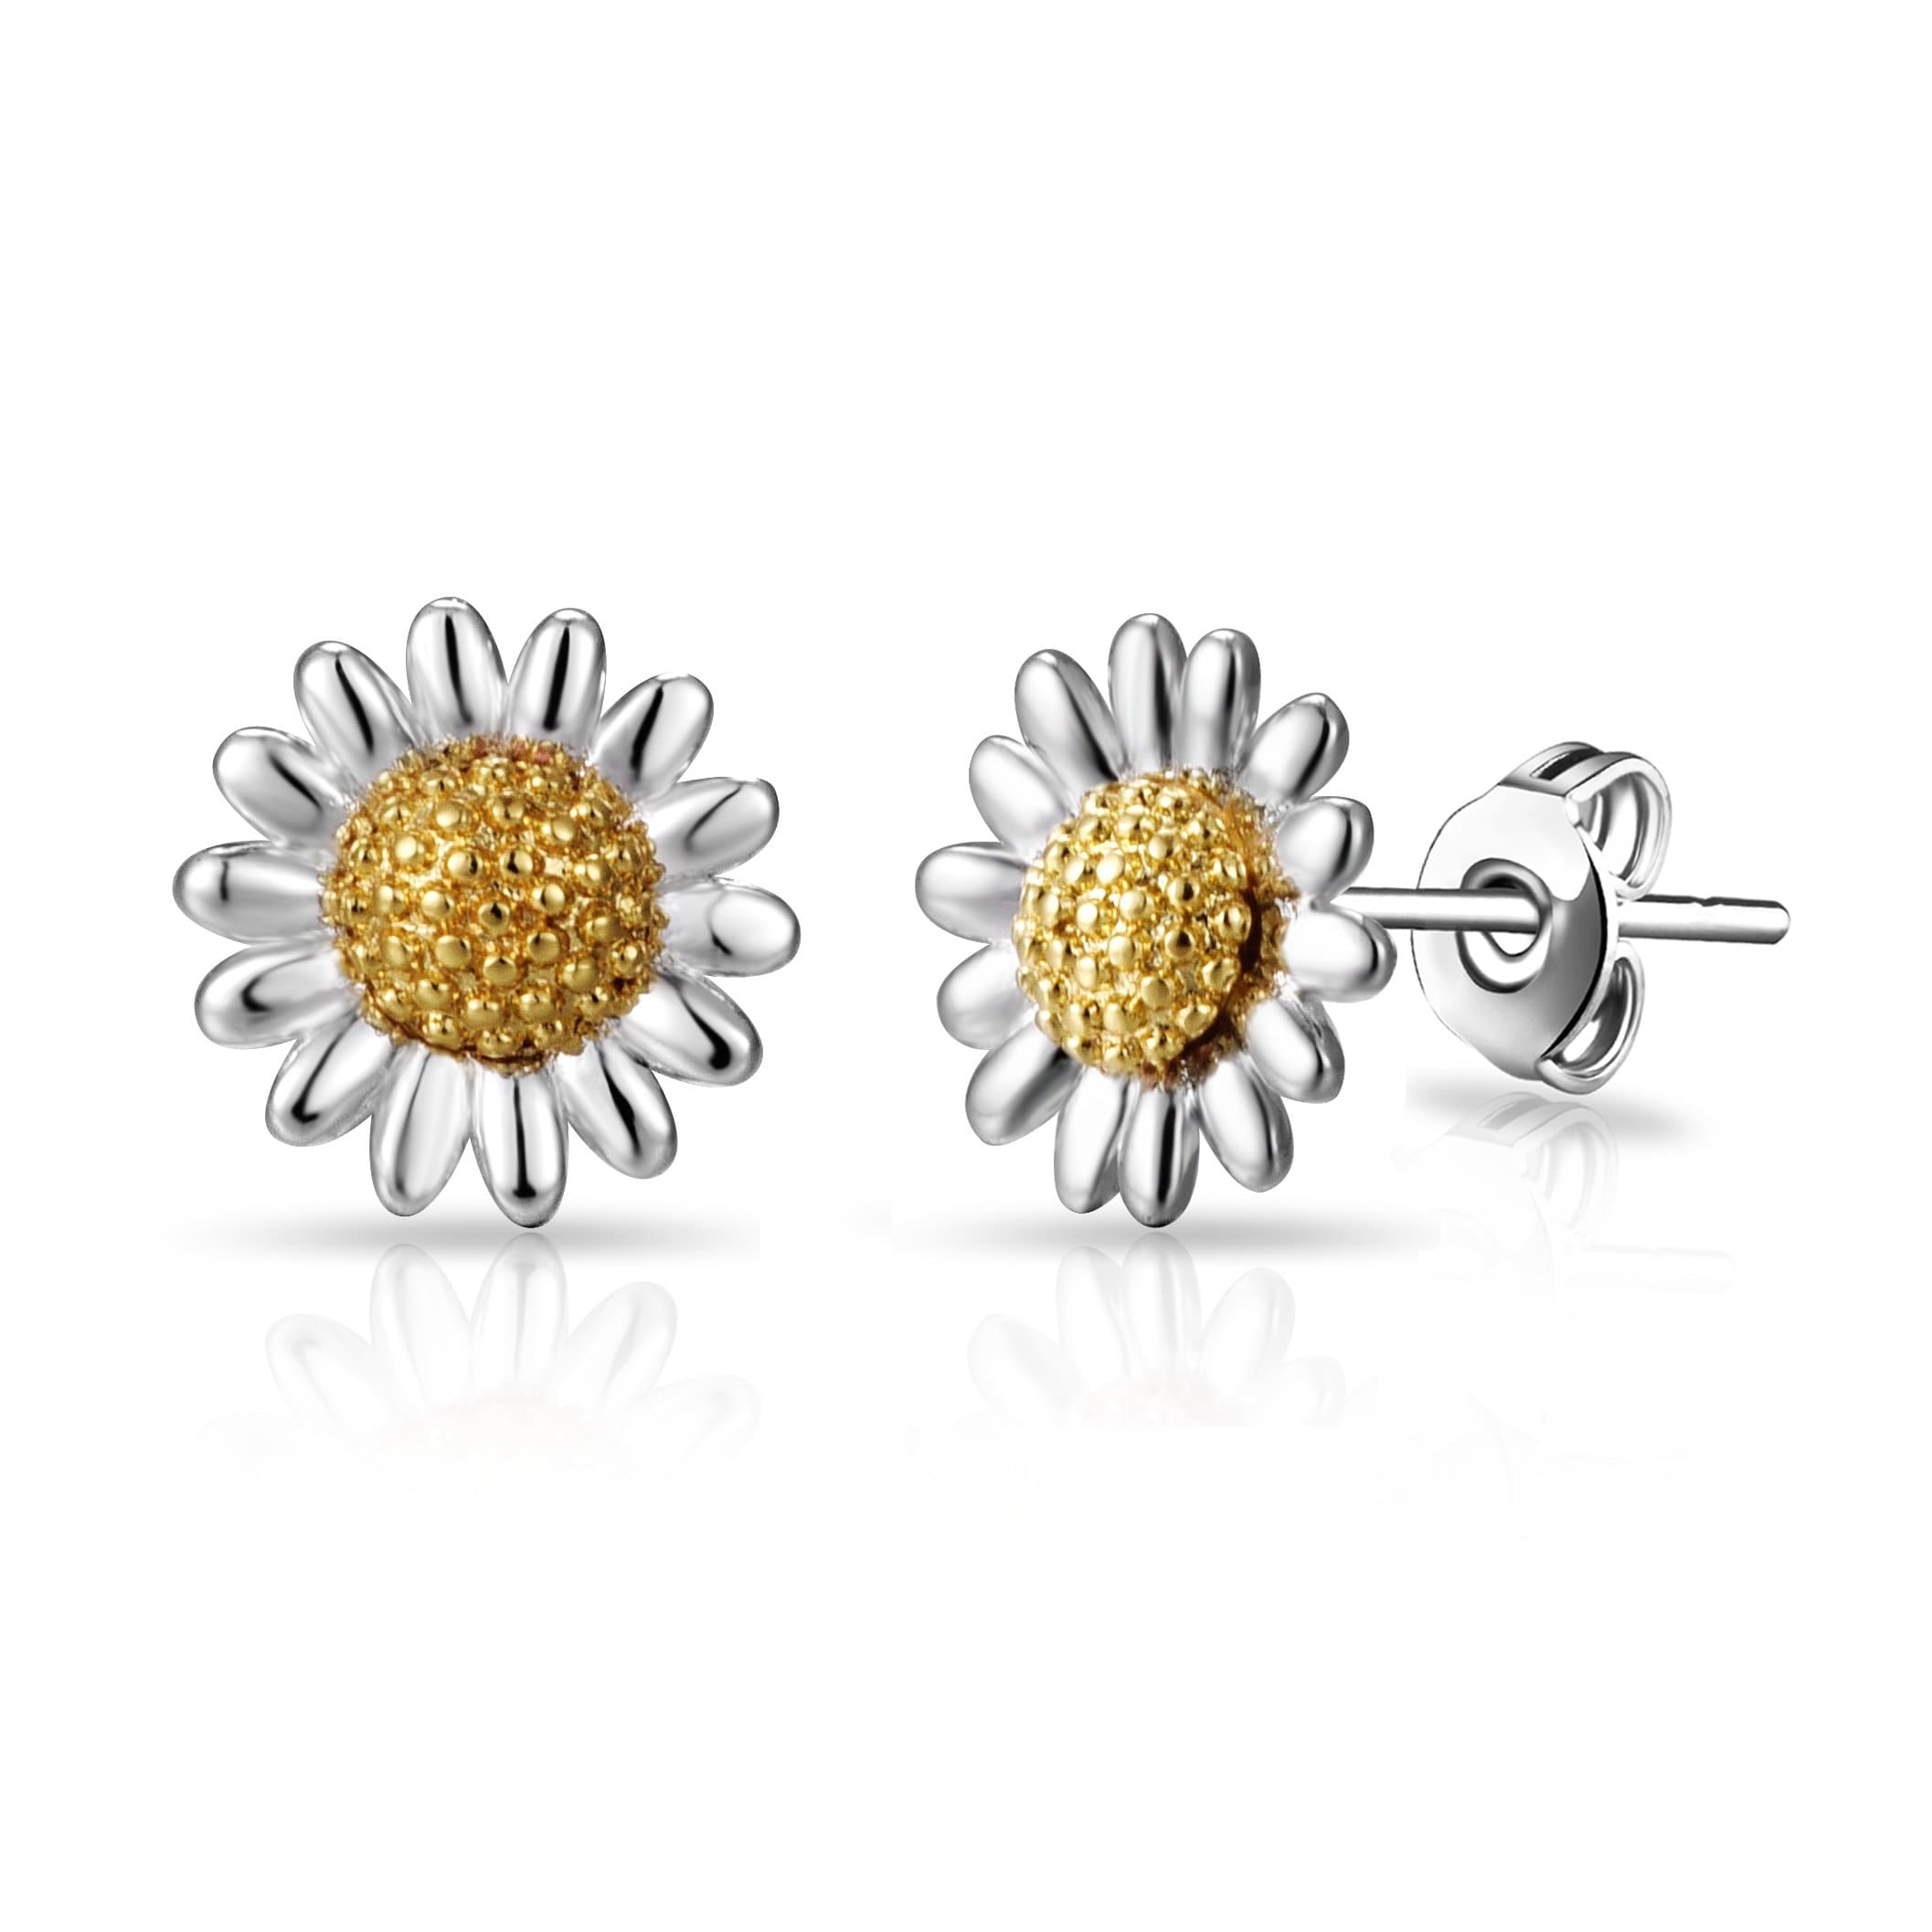 Daisy Stud Earrings by Philip Jones Jewellery